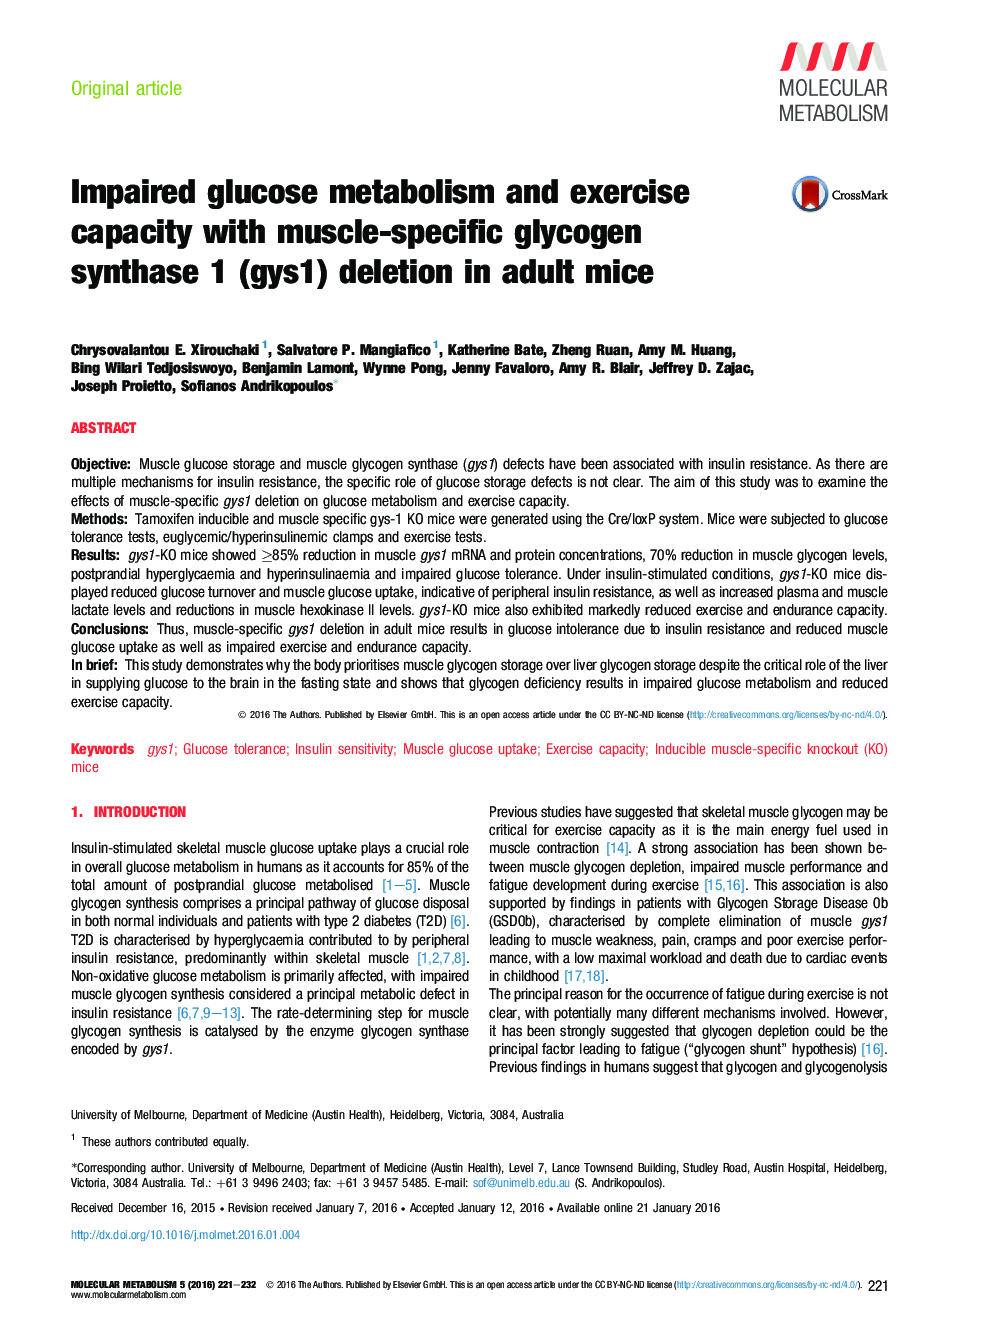 اختلال در متابولیسم گلوکز و ظرفیت تمرین با حذف گلیکوژن سنتاز 1 (gys1) در موش بالغ